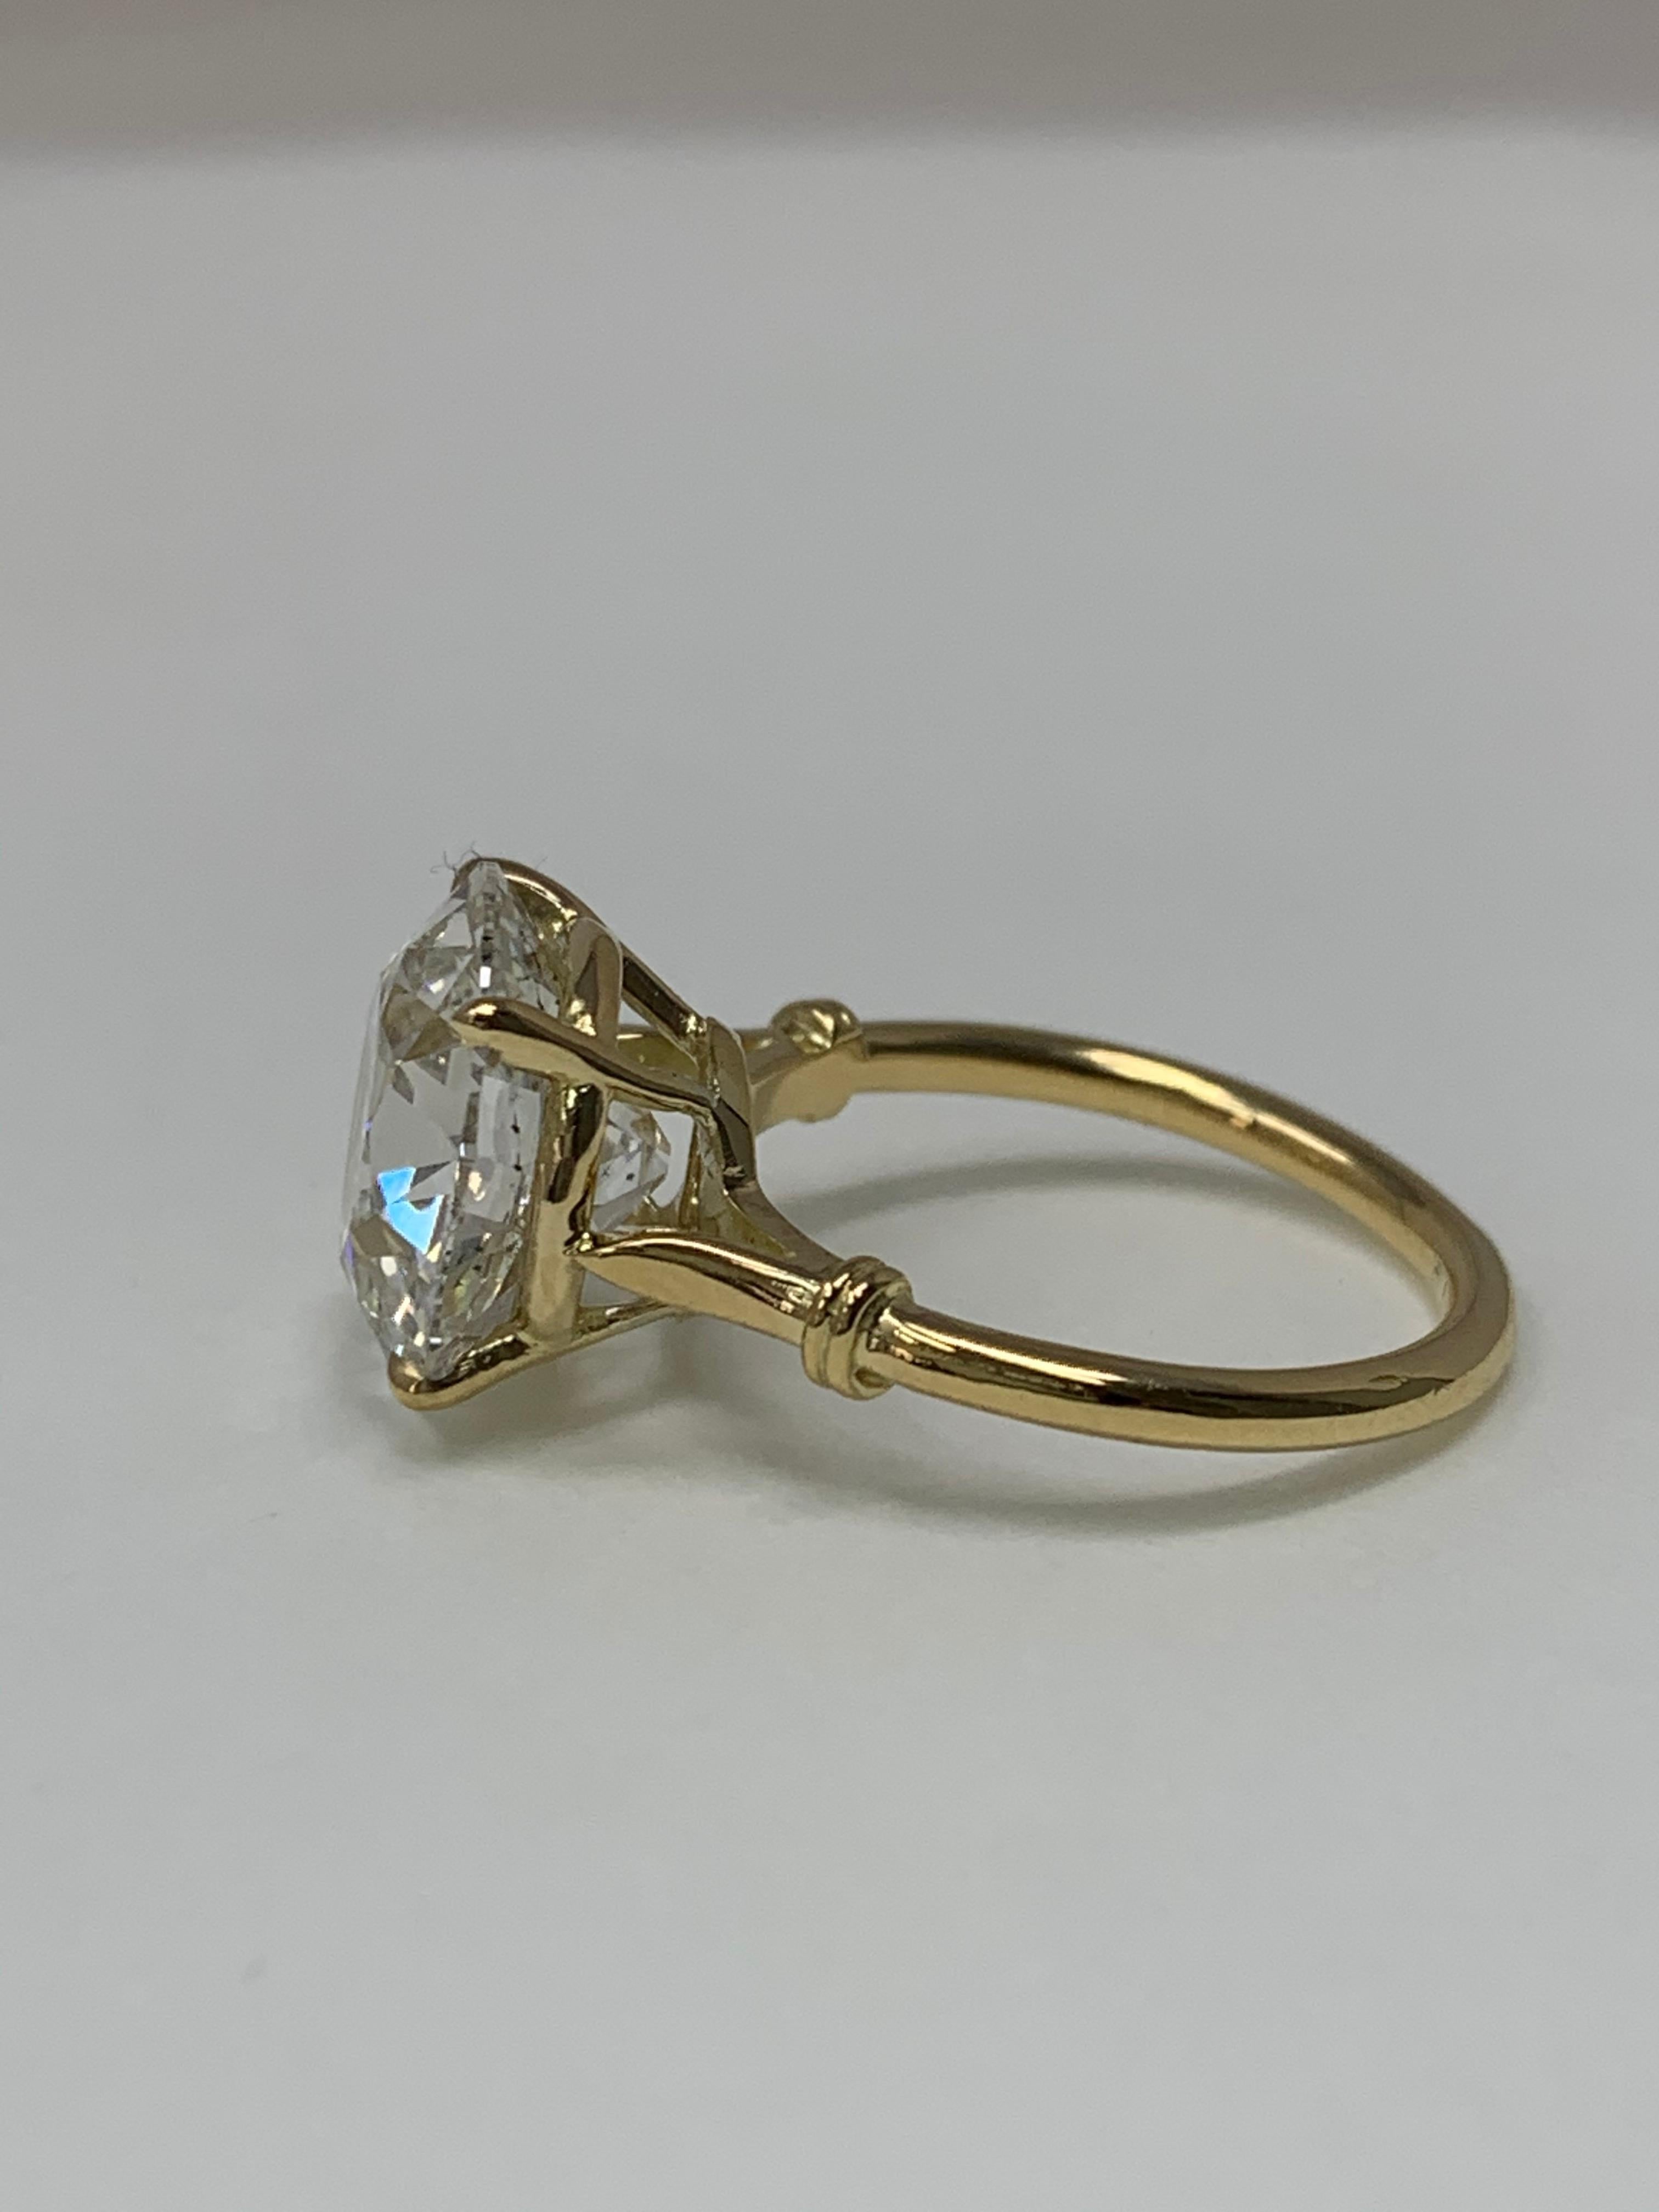 6.30 Carat Old European Cut Diamond Ring in 18 Karat Gold, GIA Certified. 1